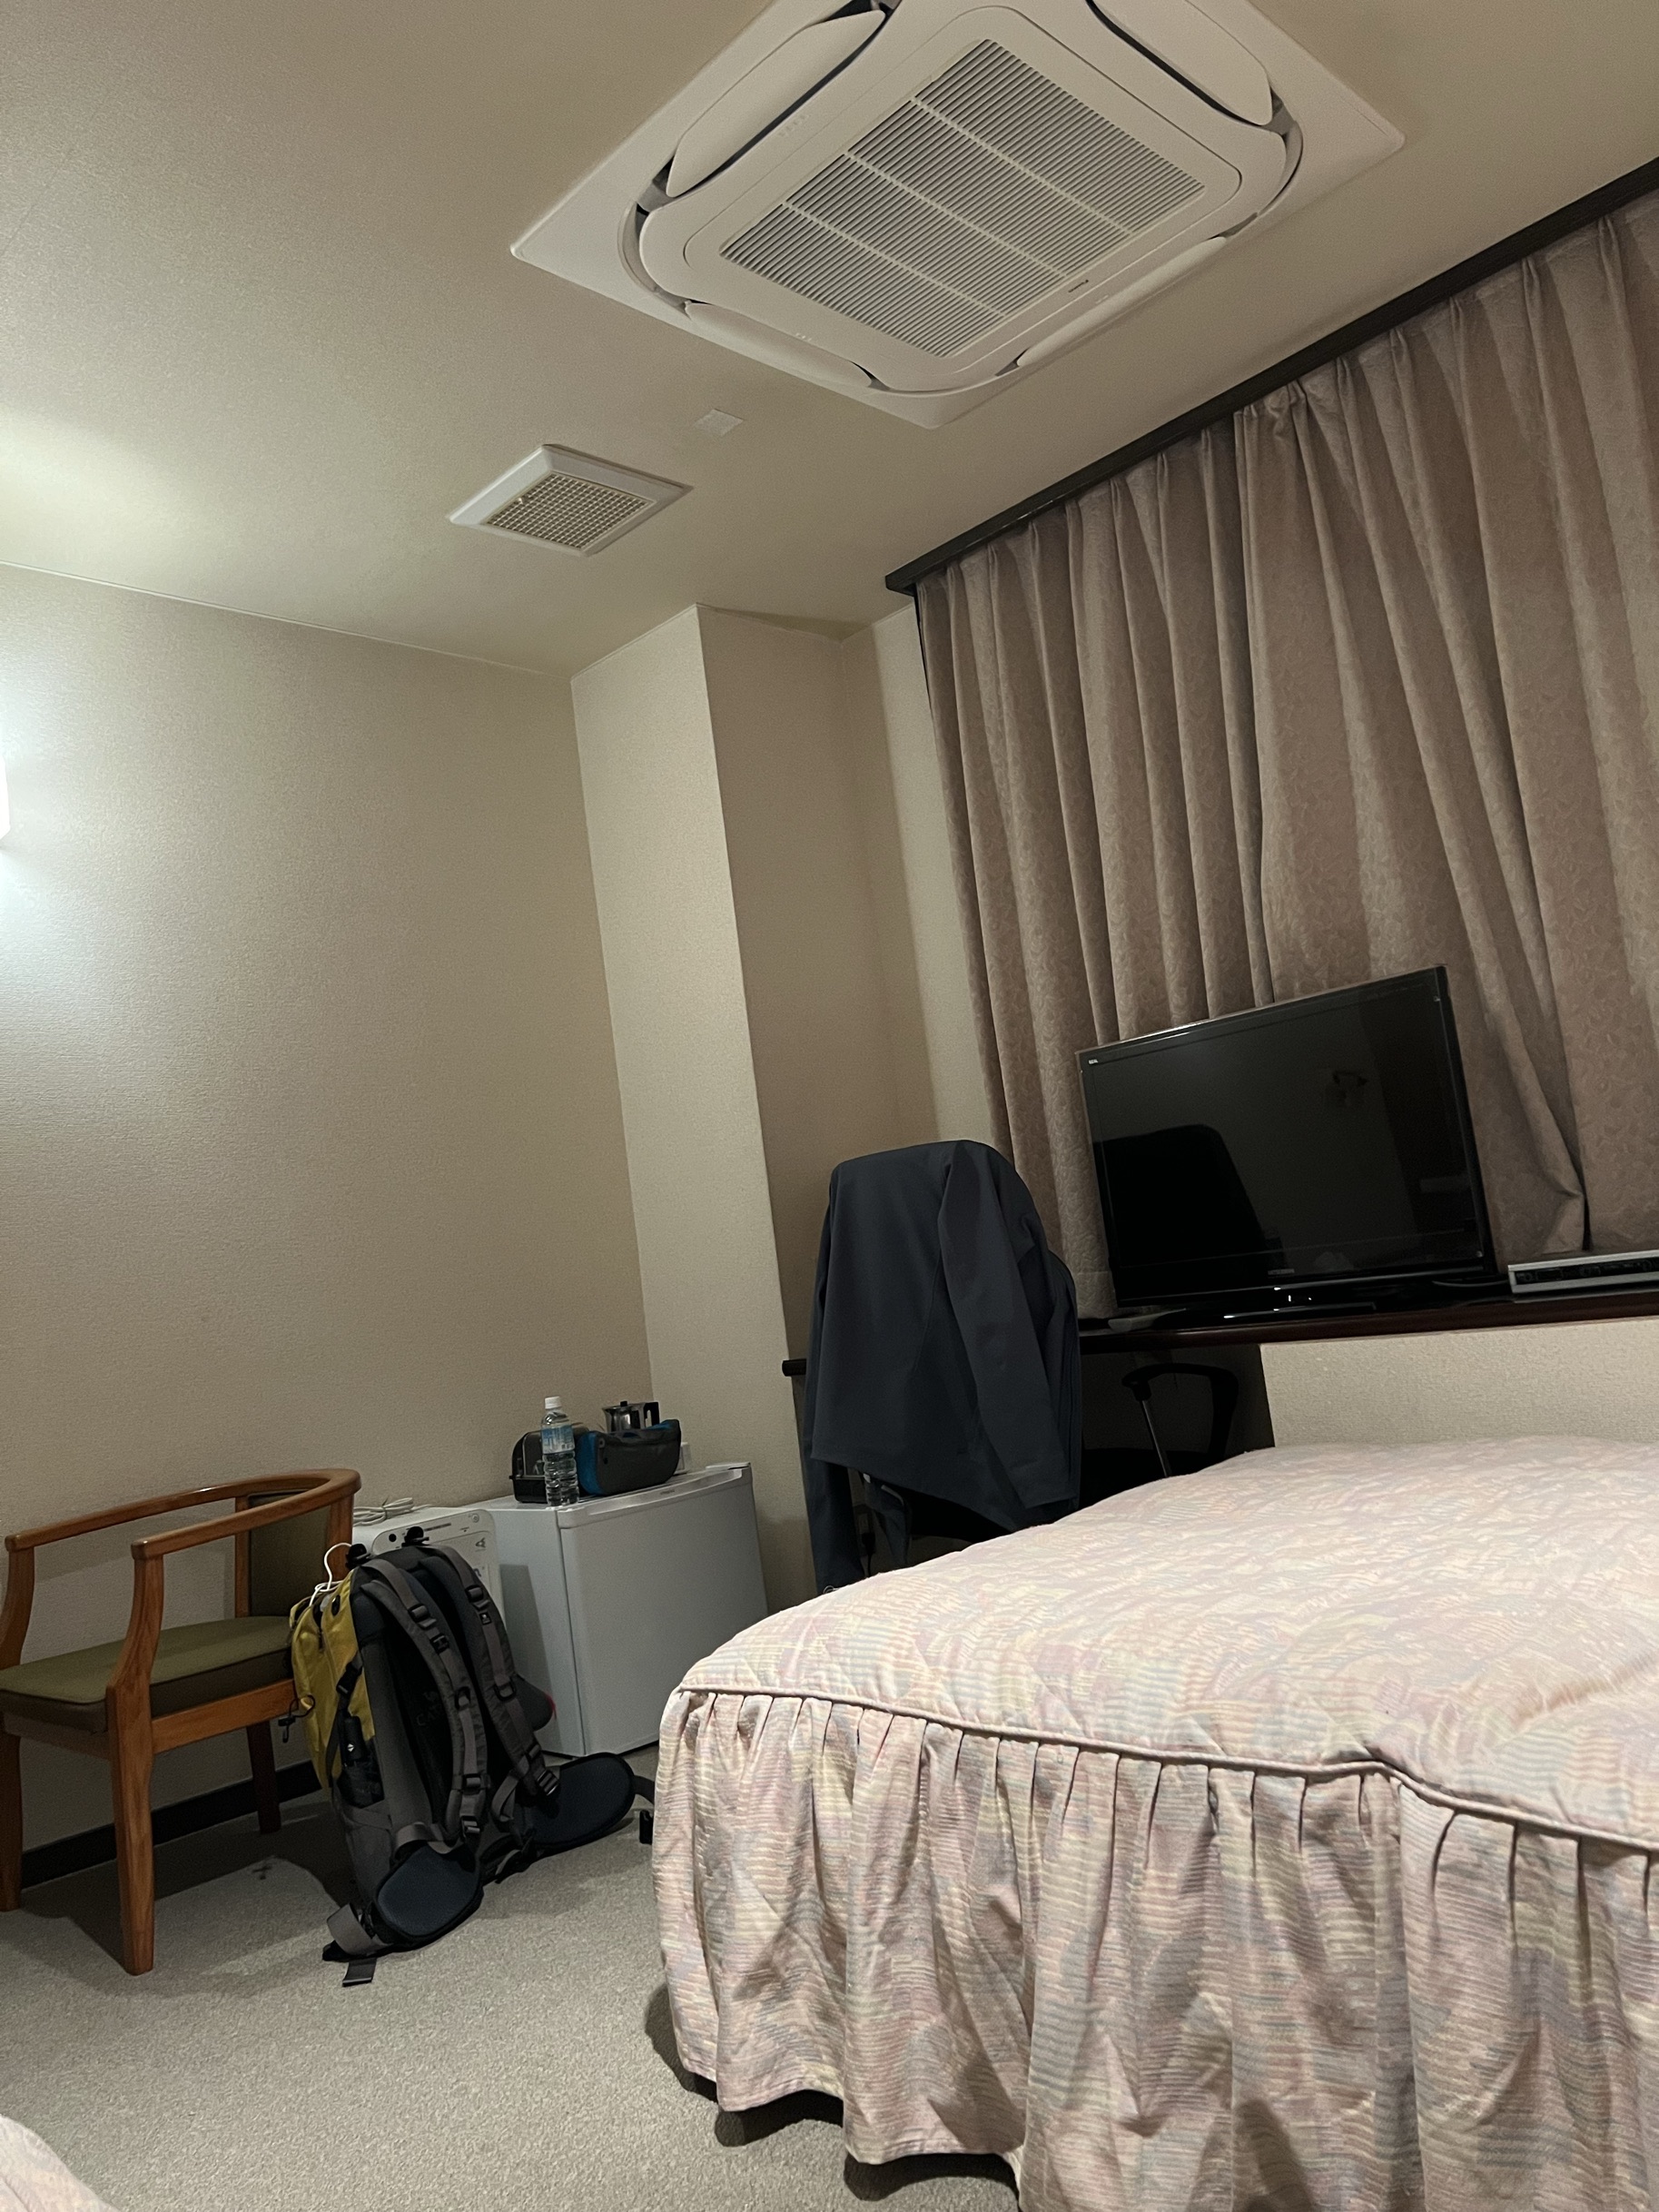 日本的宾馆房间都小，这个算不错的了，房间设施齐全。服务热情周到没话说，看我查地图主动询问并拿来店里地